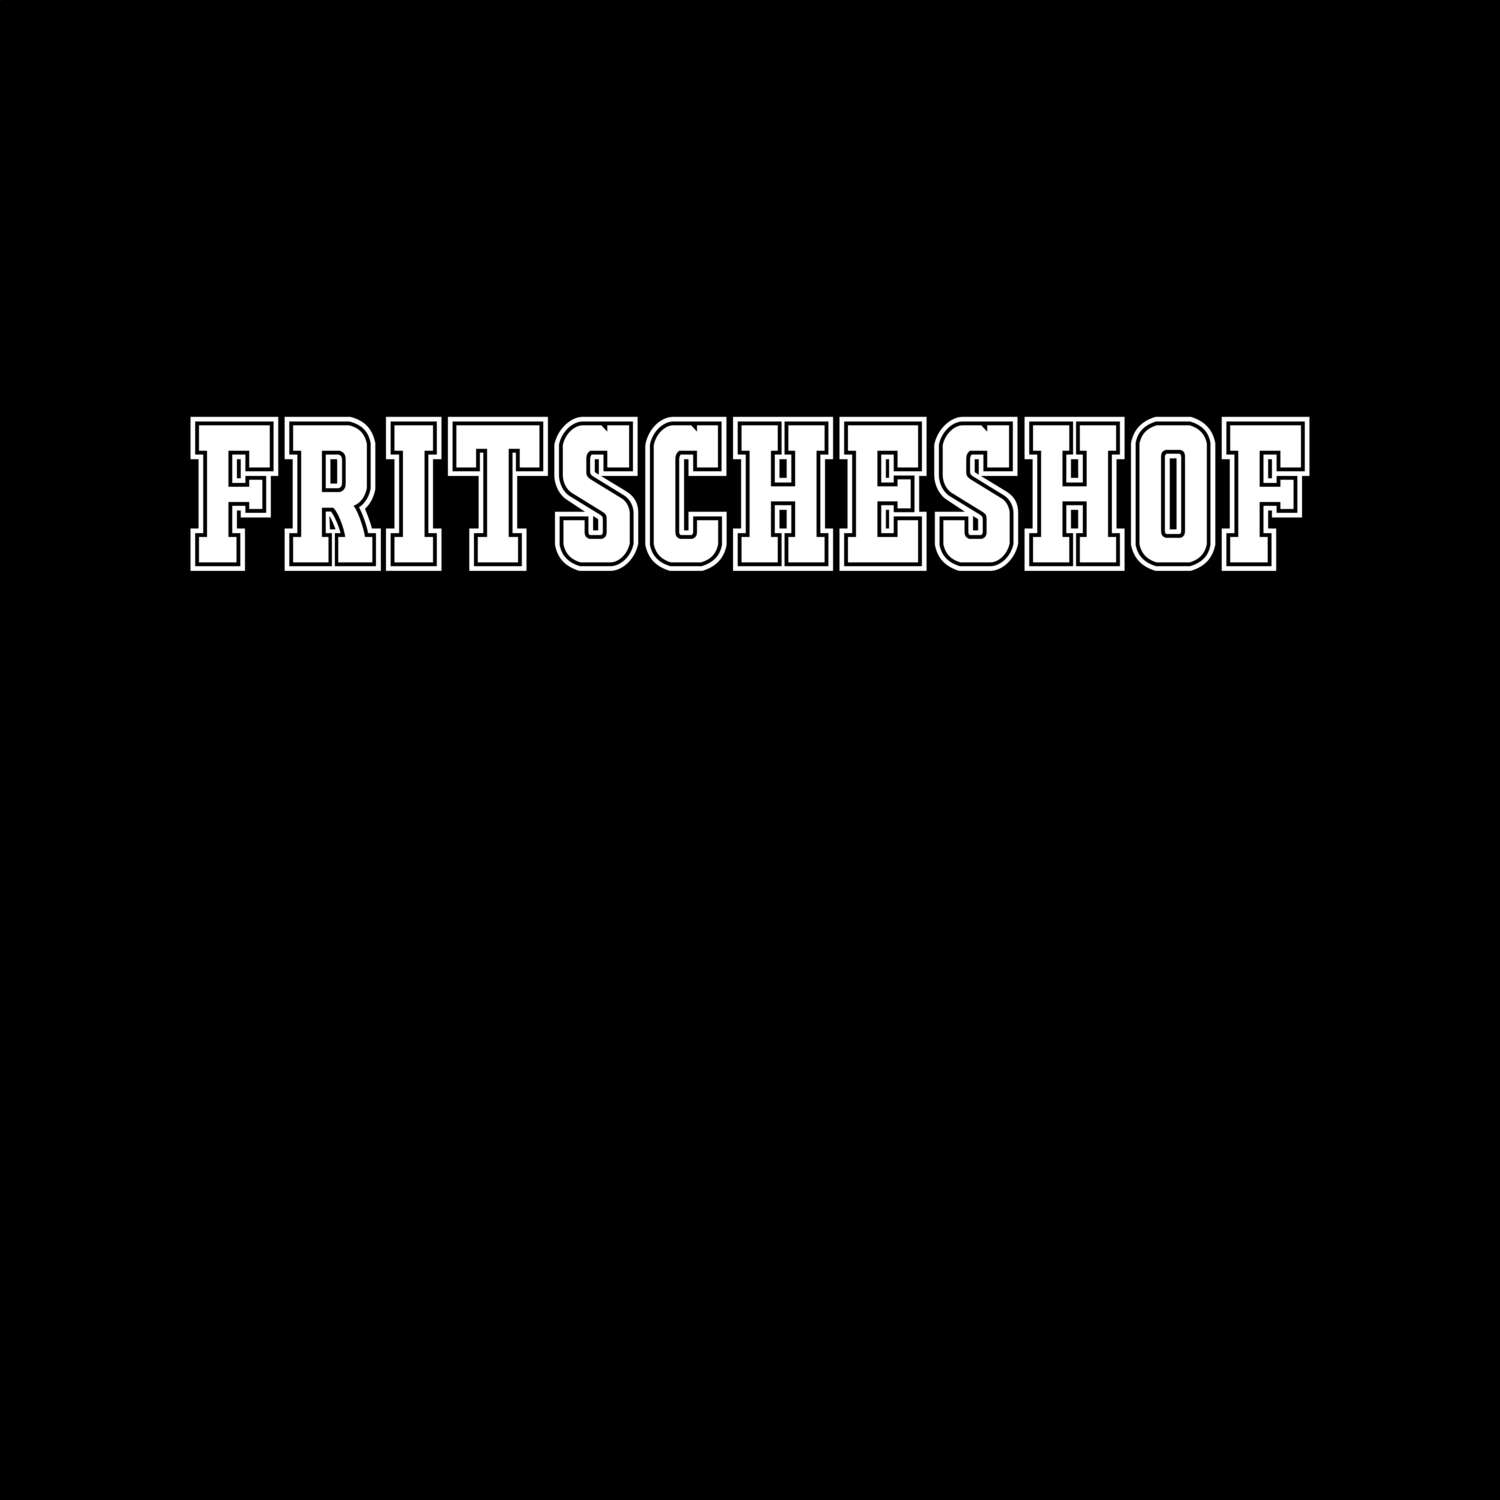 Fritscheshof T-Shirt »Classic«